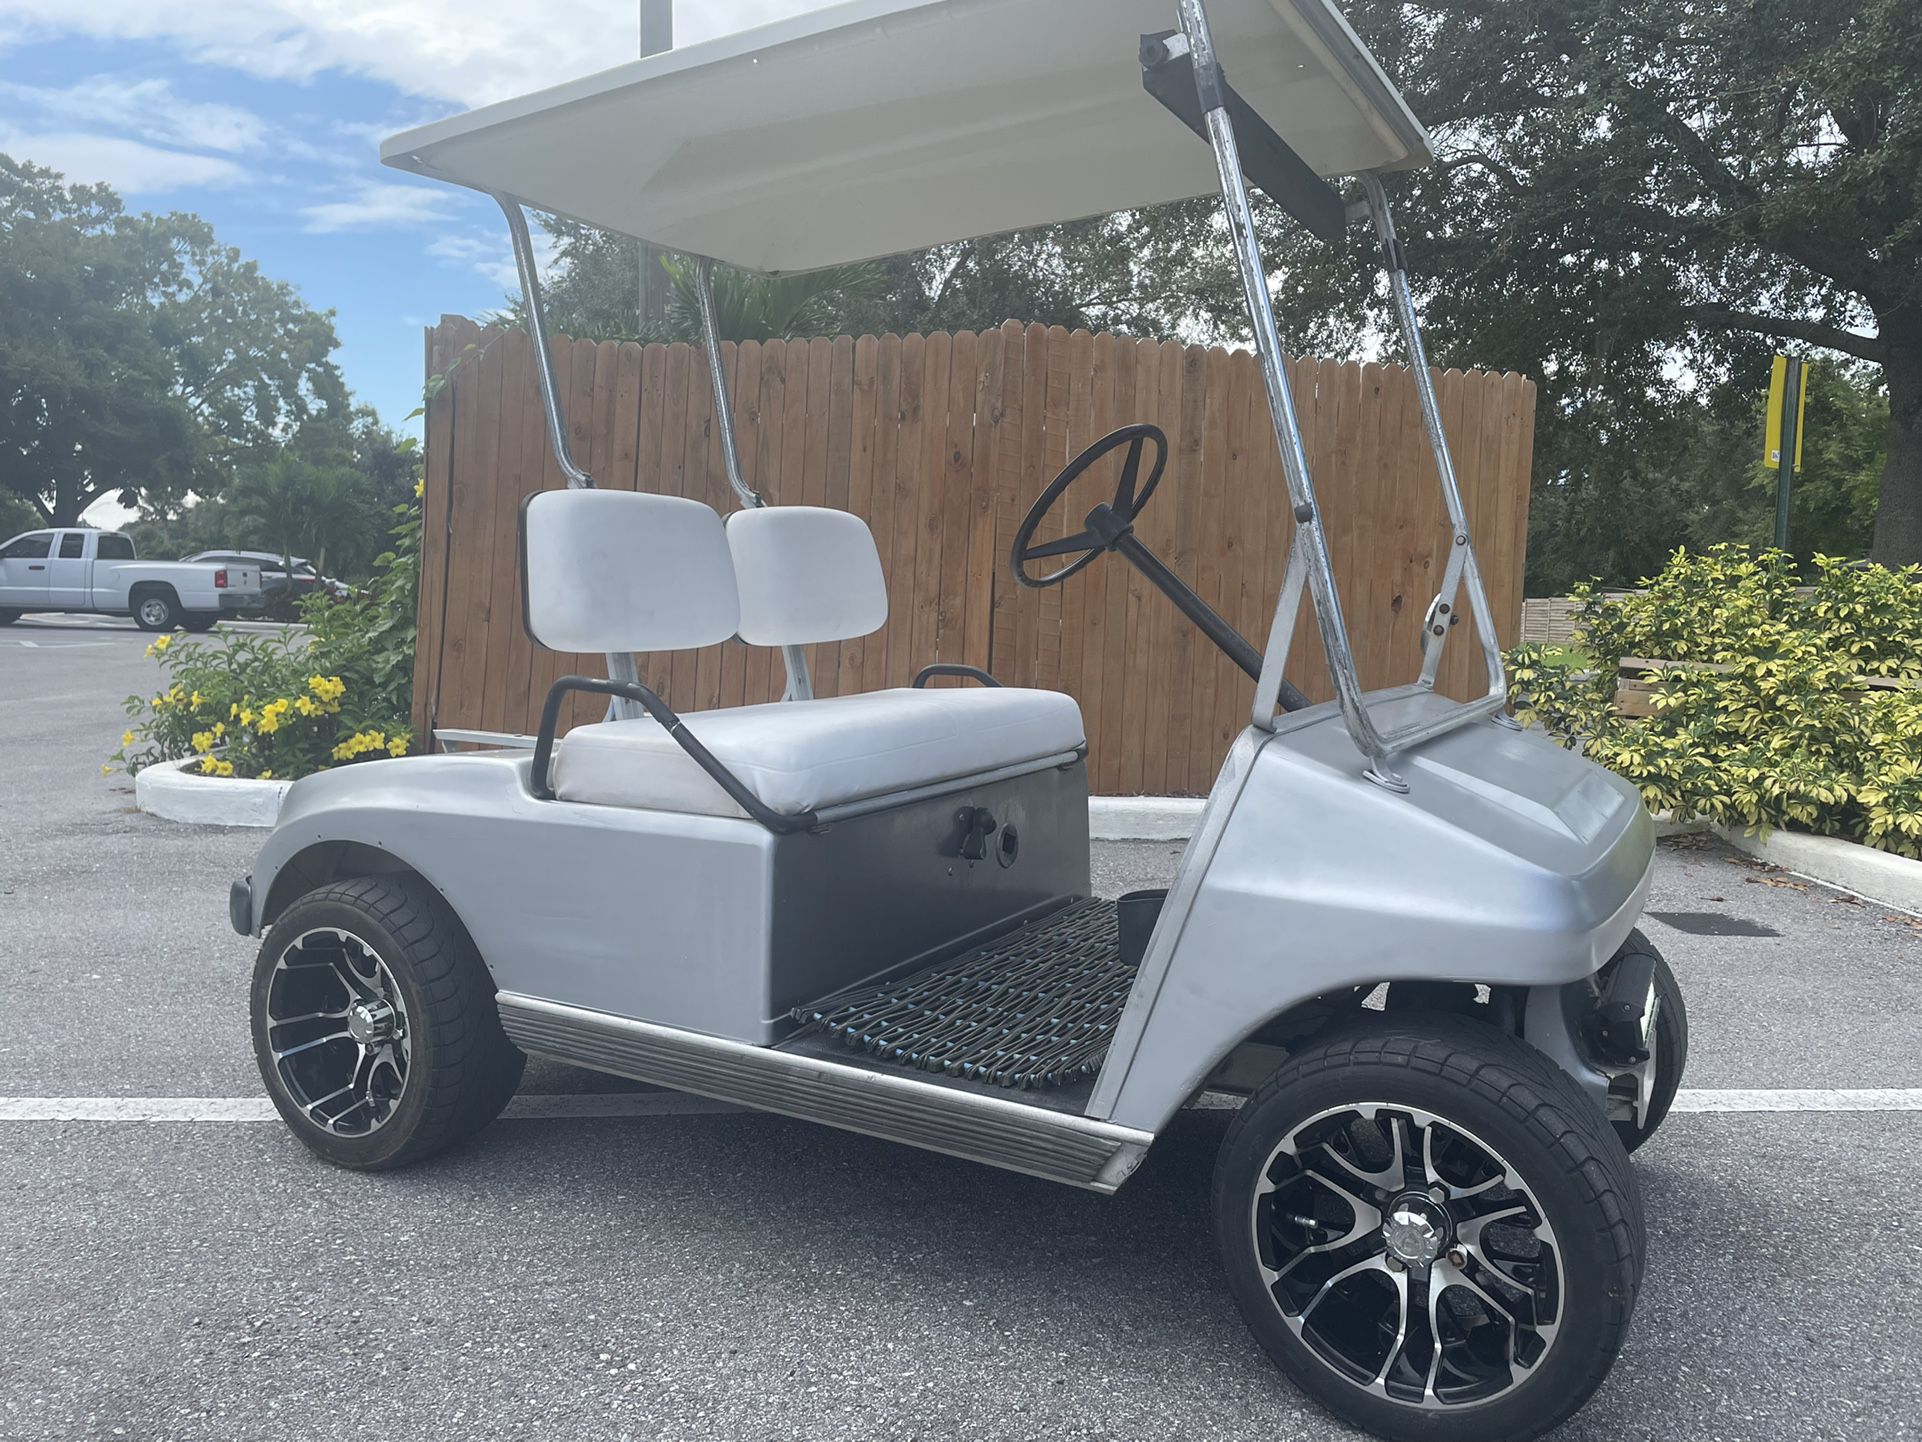 Club car DS golf cart